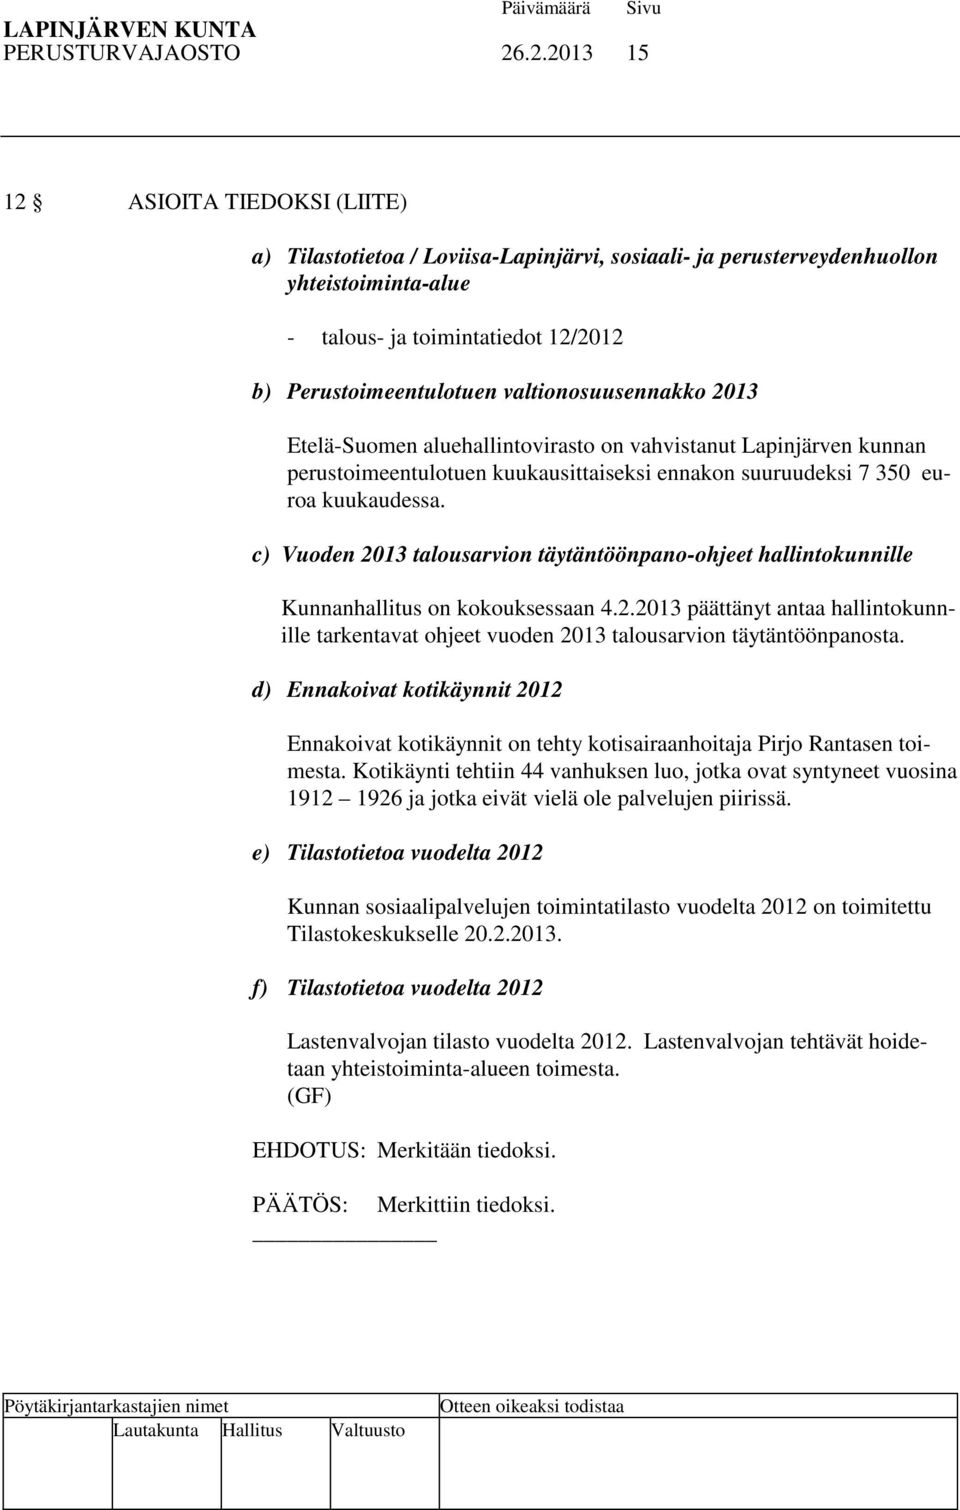 valtionosuusennakko 2013 Etelä-Suomen aluehallintovirasto on vahvistanut Lapinjärven kunnan perustoimeentulotuen kuukausittaiseksi ennakon suuruudeksi 7 350 euroa kuukaudessa.